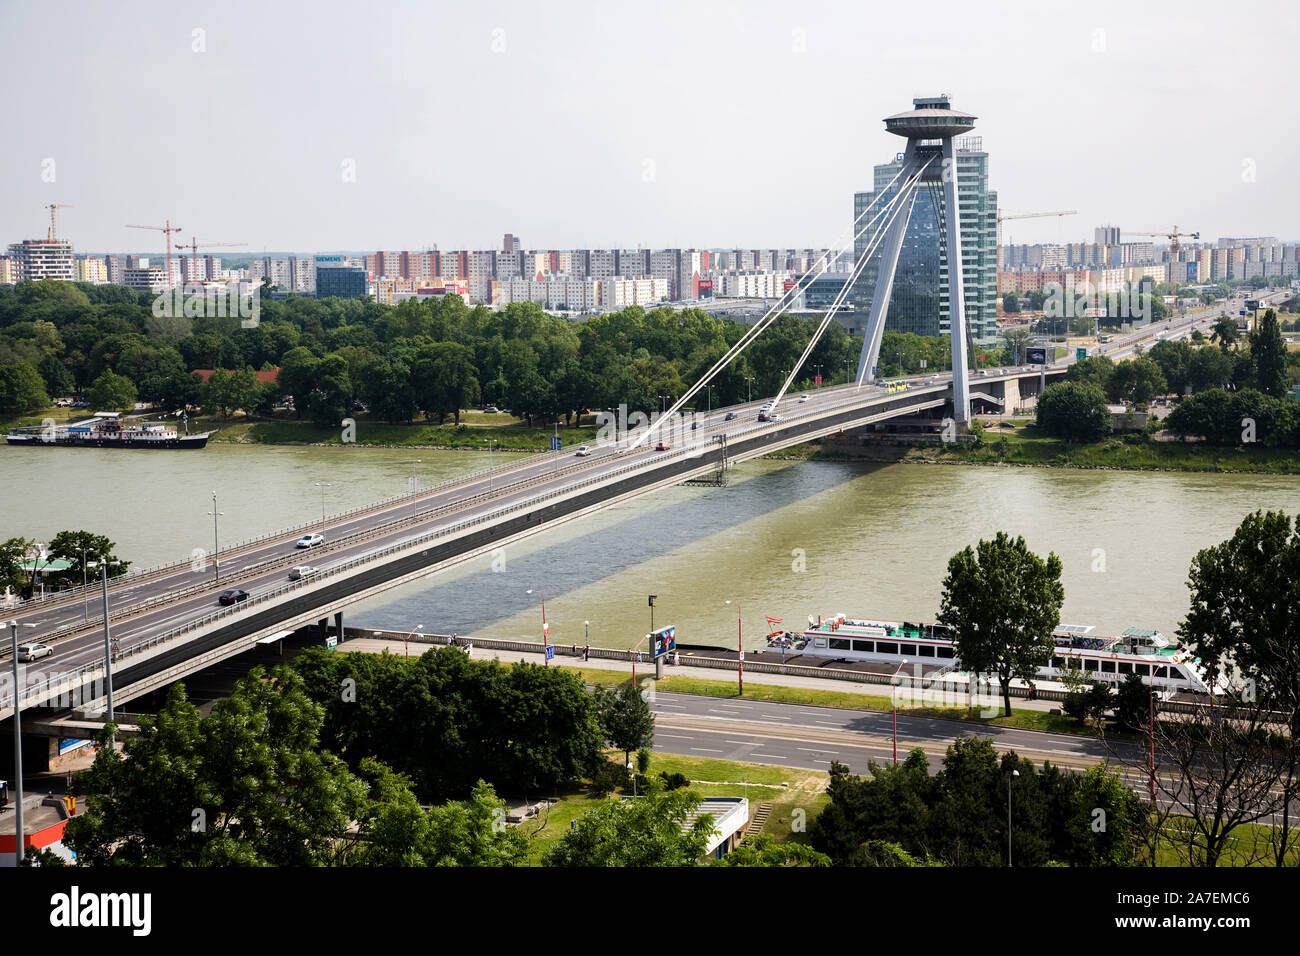 The New Bridge (Novy Most) spans across the Danube River in Bratislava Slovakia Stock Photo